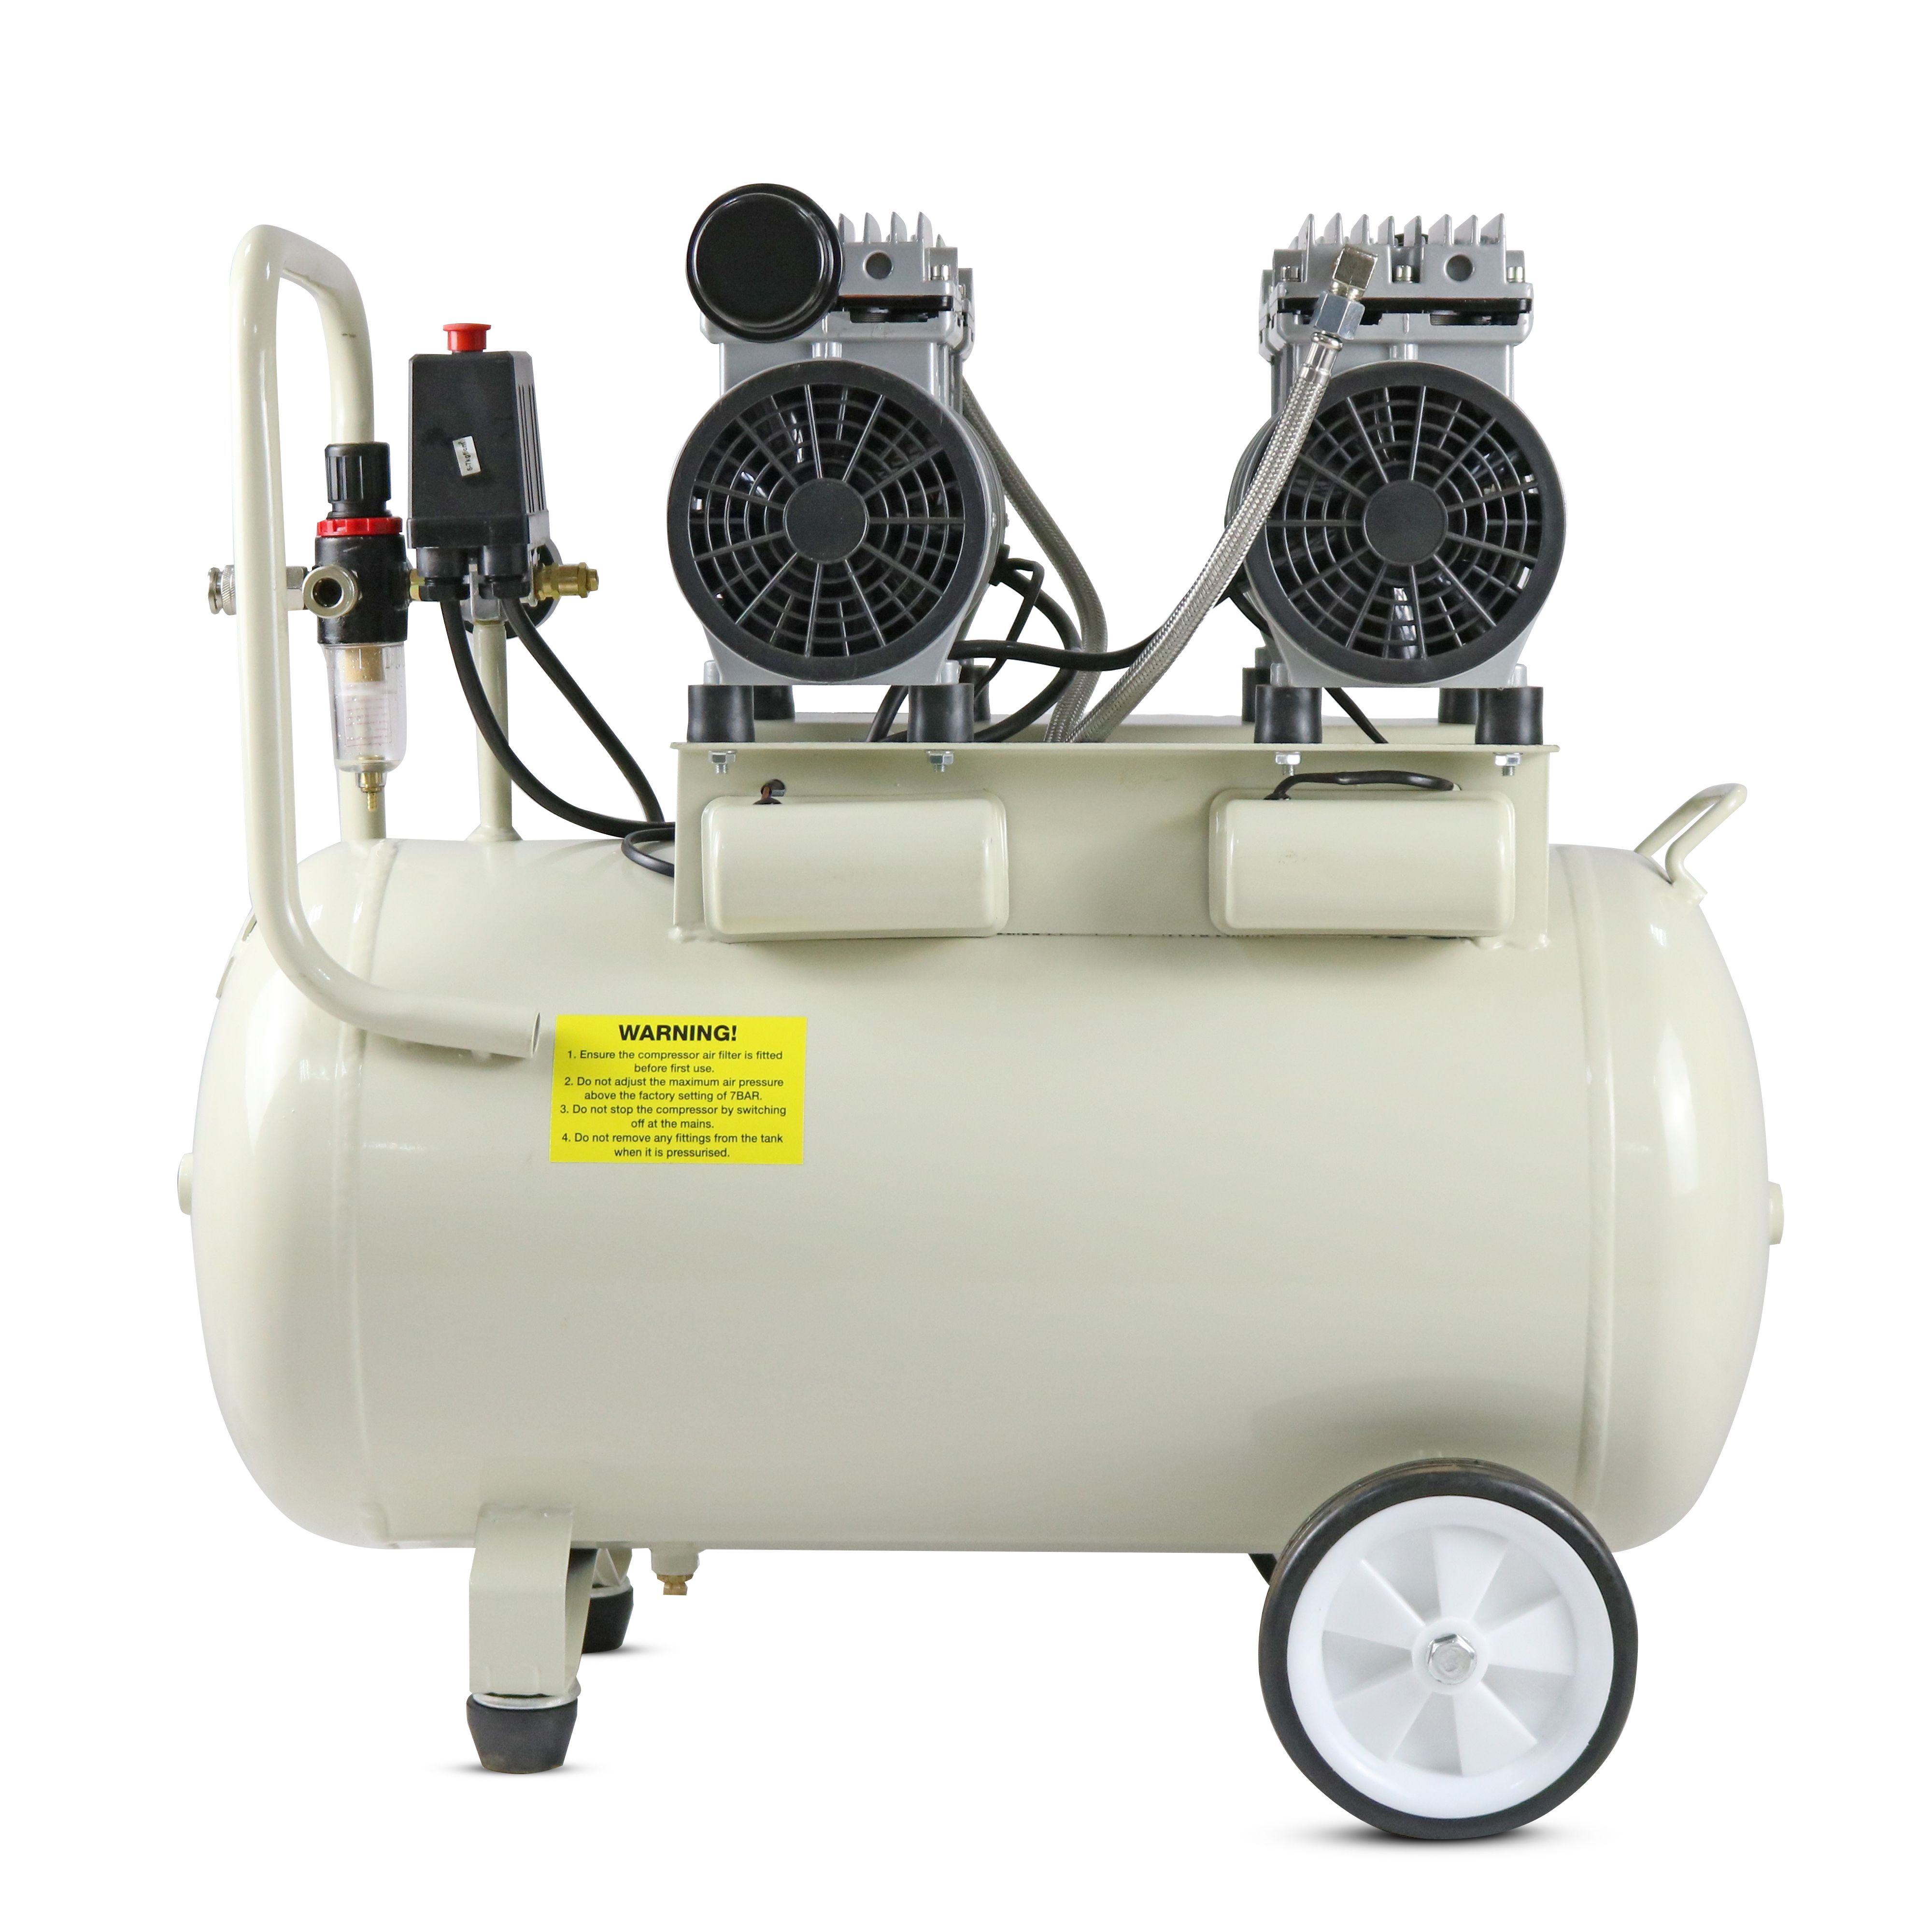 50L Quiet Air Compressor, 2600W: Catalog + Features